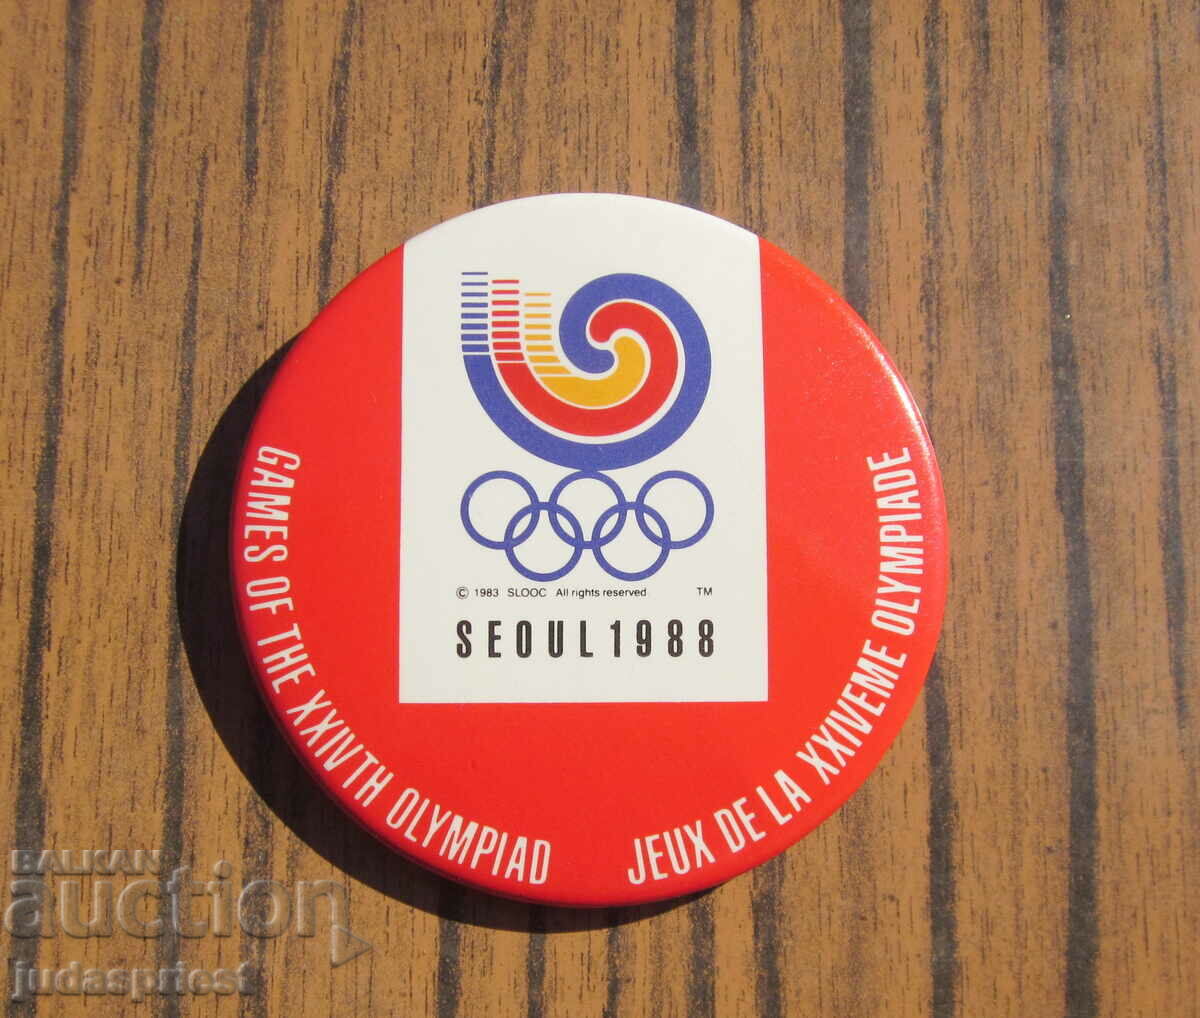 με σήμα Ολυμπιακό σήμα Ολυμπιάδα Σεούλ 1988